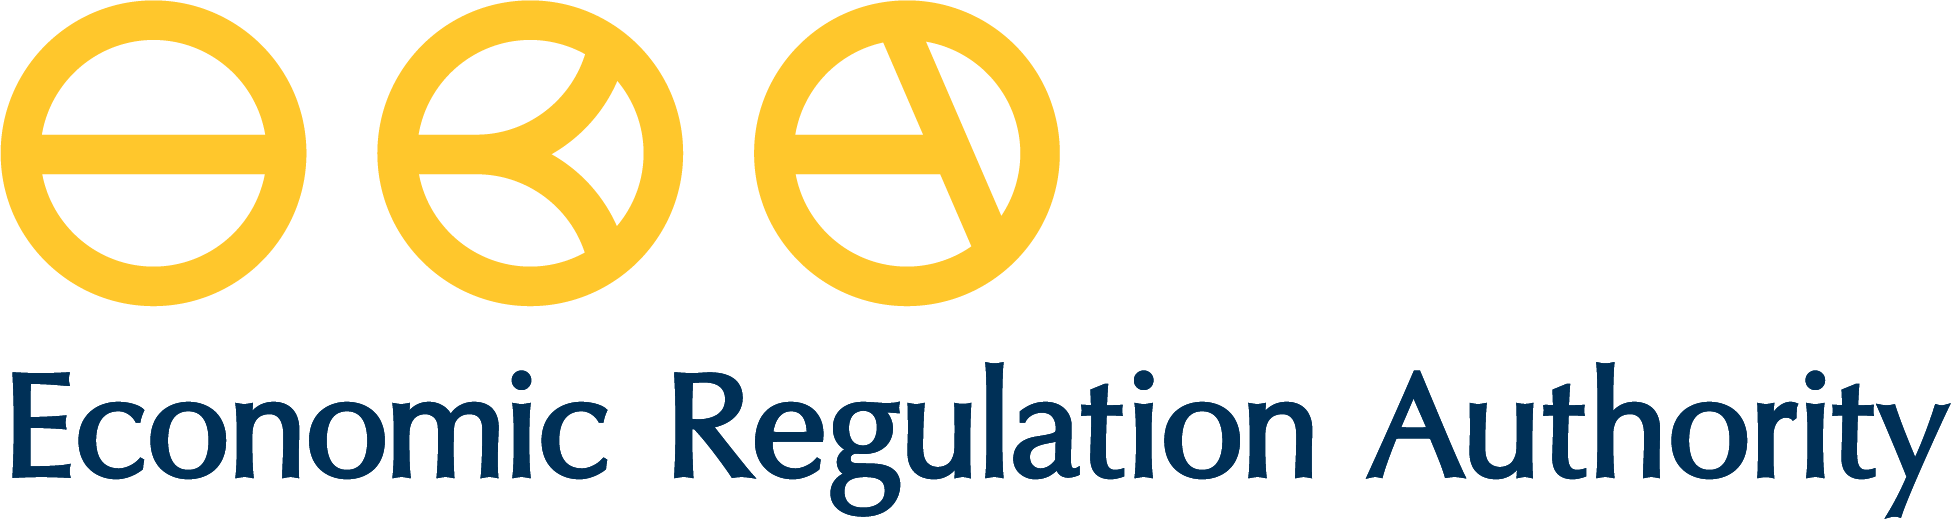 Economic Regulation Authority